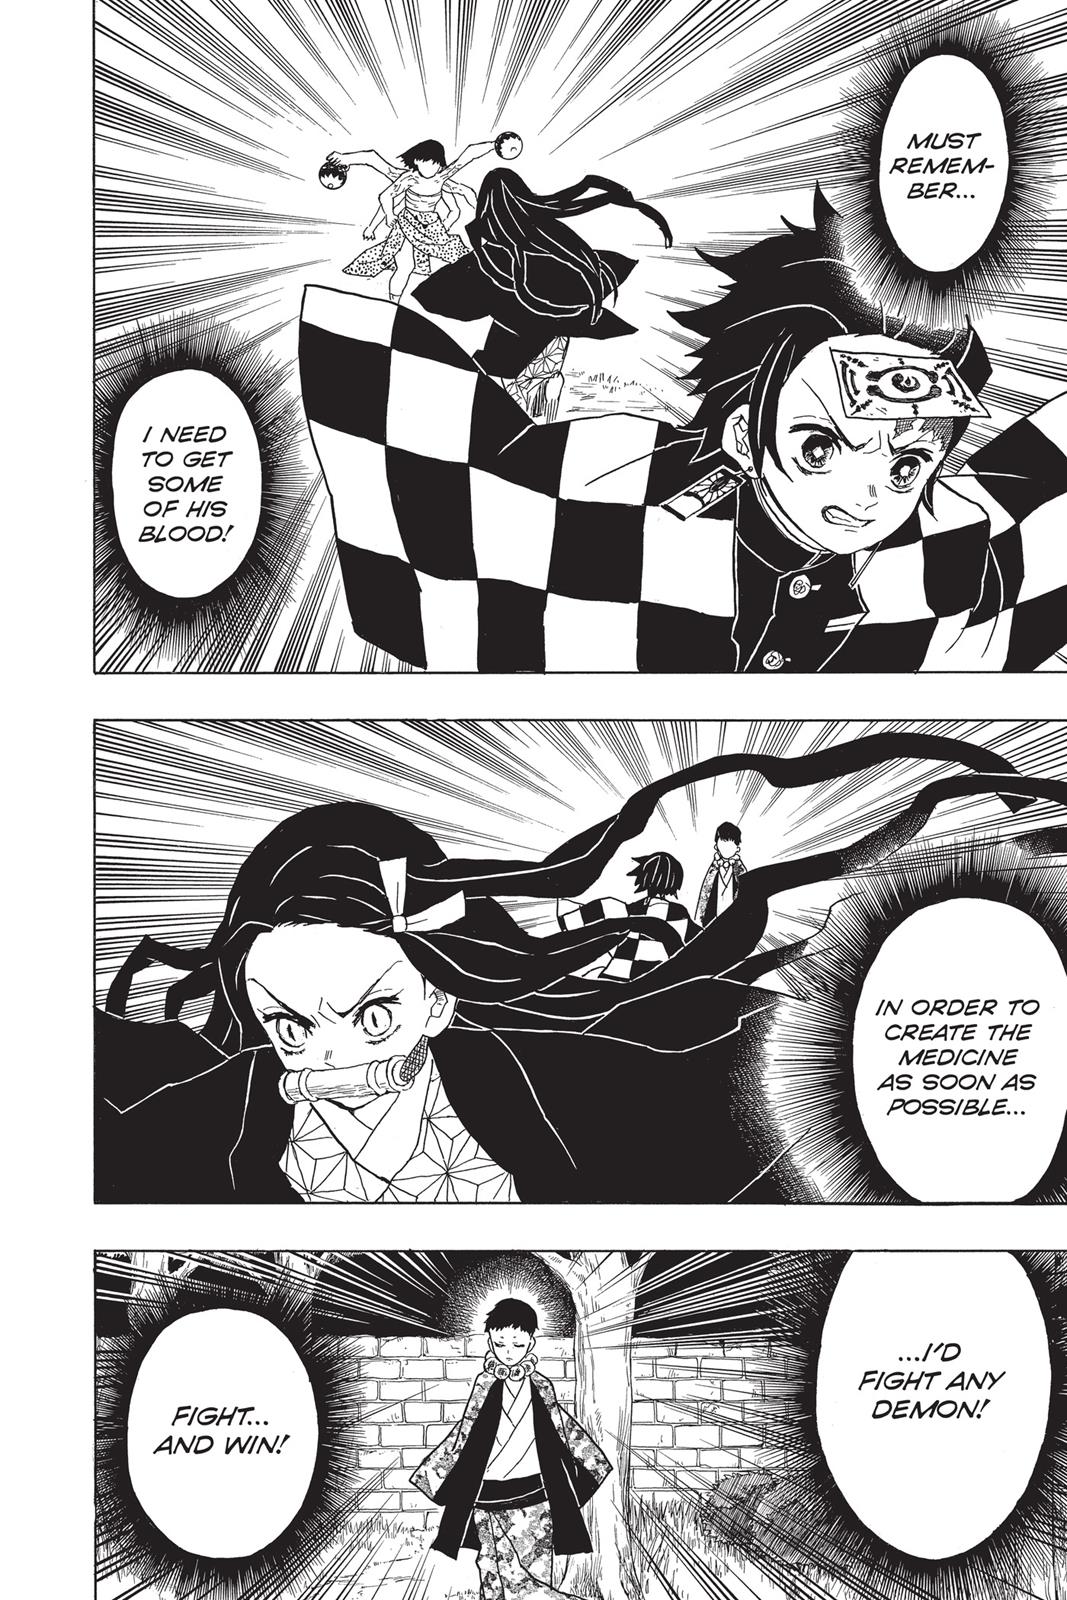 Demon Slayer Manga Manga Chapter - 17 - image 11